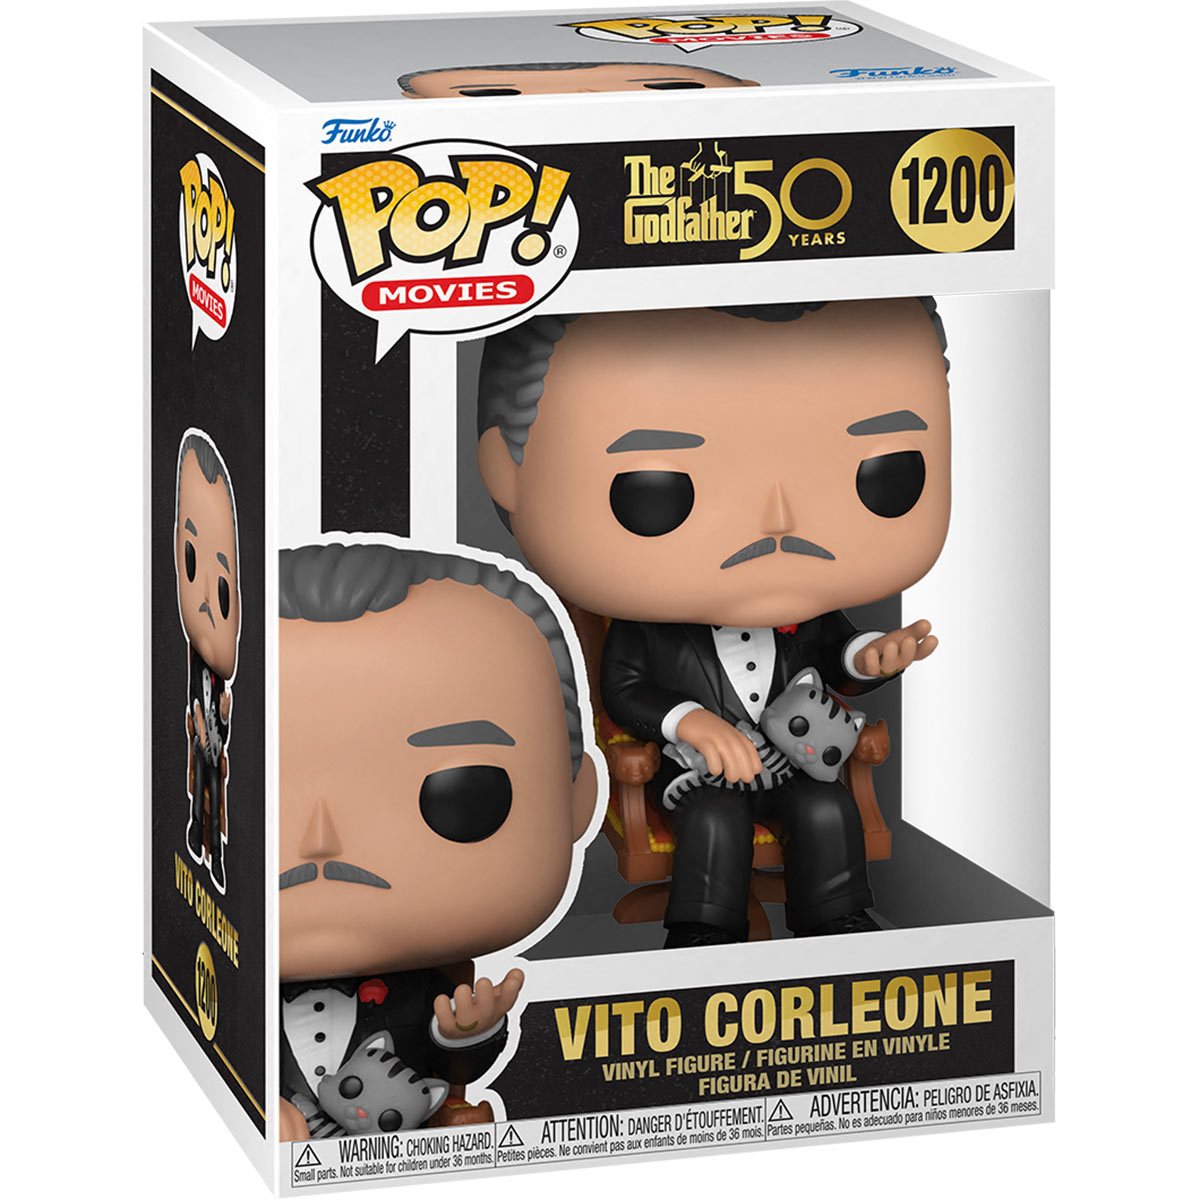 Vito Corleone Funko Pop! Movies The Godfather 50th anniversary #1200